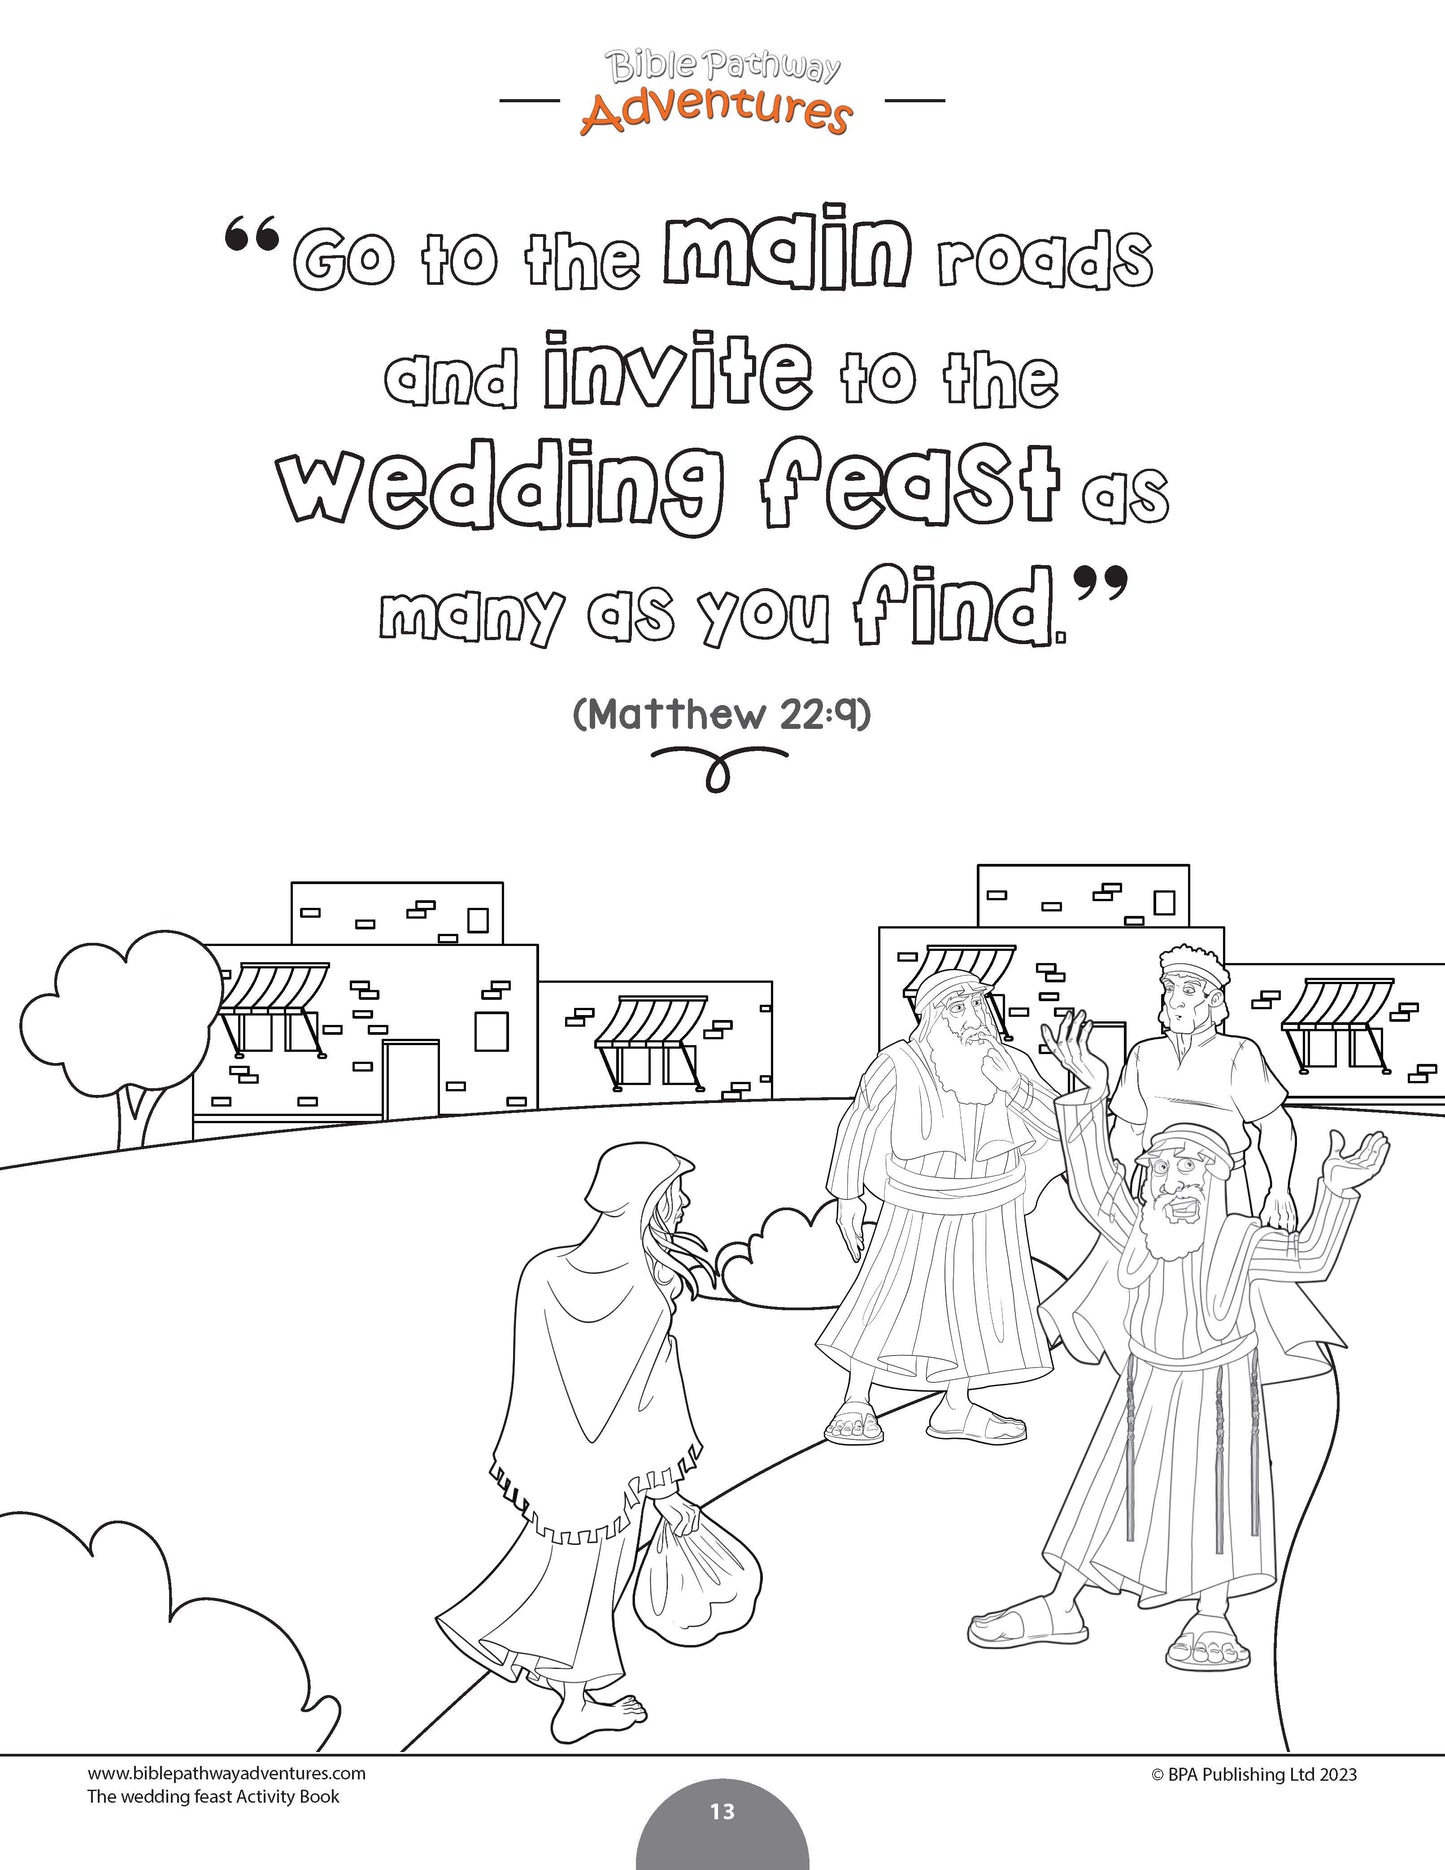 Libro de actividades de la parábola de la fiesta de bodas